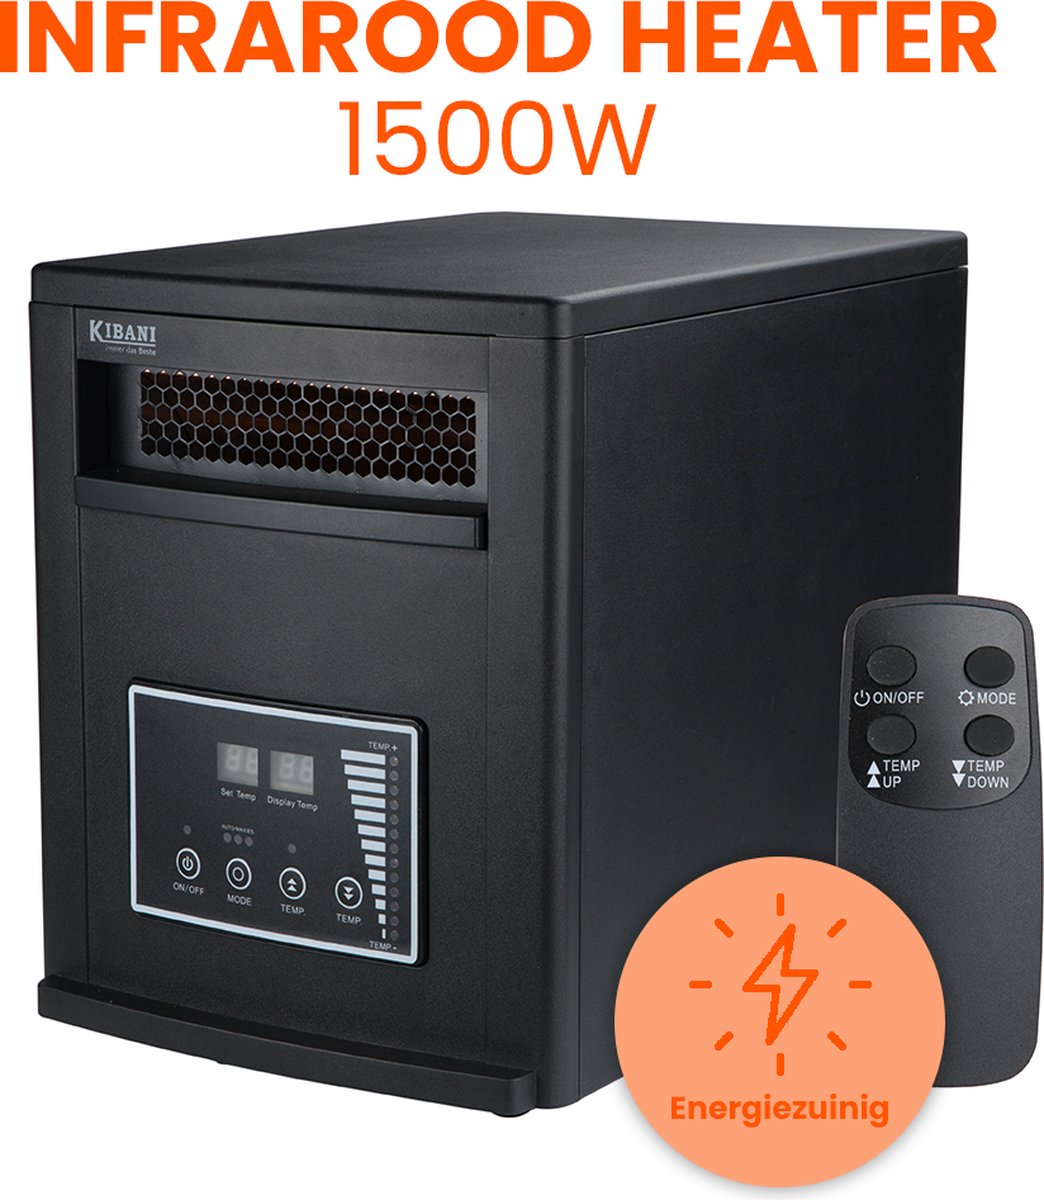 Kibani Infrarood Heater 1500 Watt - Kachel met 3 warmtestanden - Elektrische verwarming - Kibani